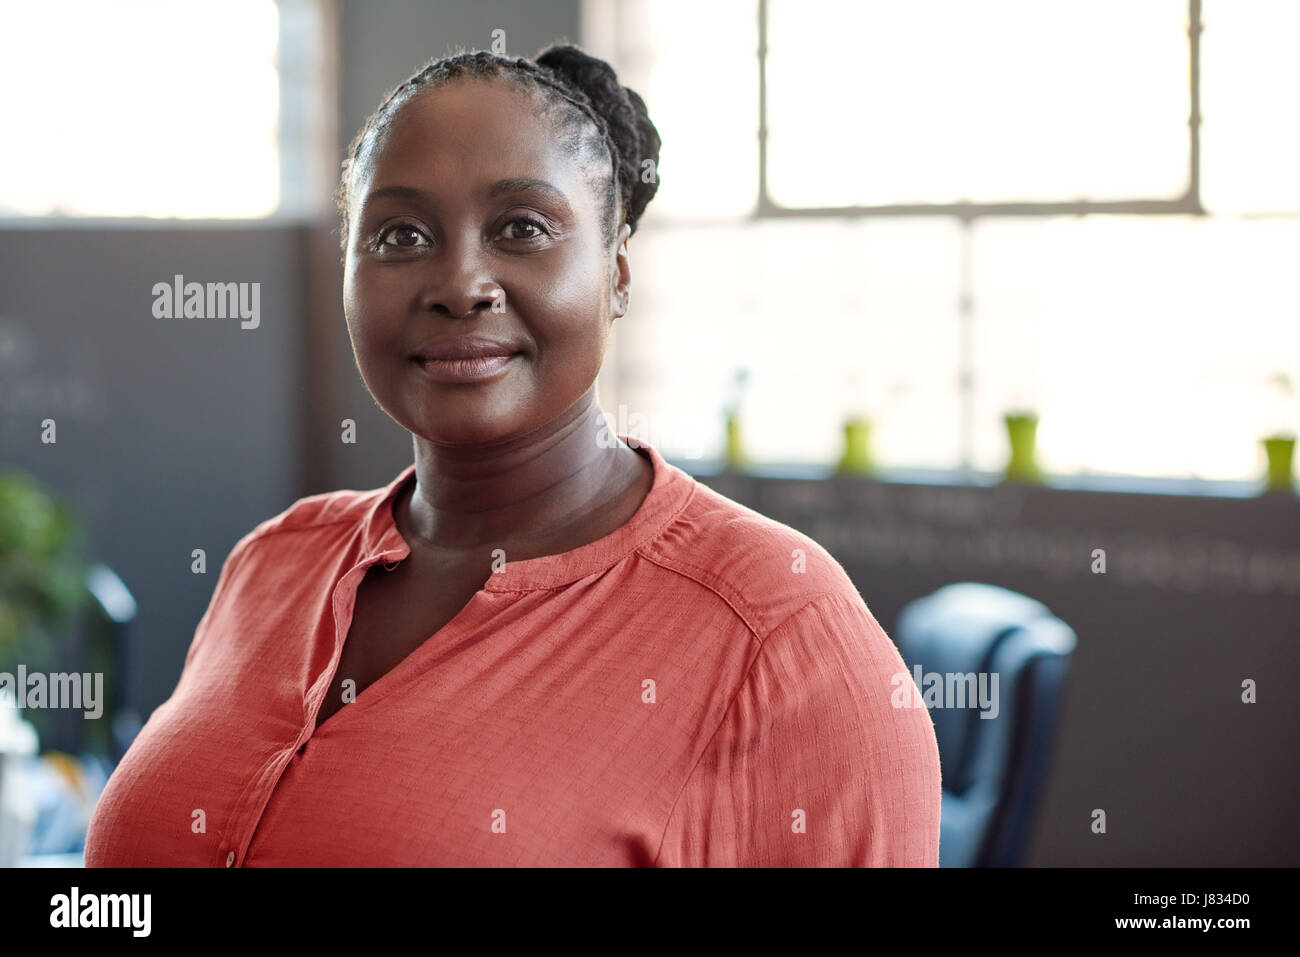 Porträt von leger gekleidet junge afrikanische Geschäftsfrau lächelnd souverän stand allein in einem modernen Büro Stockfoto